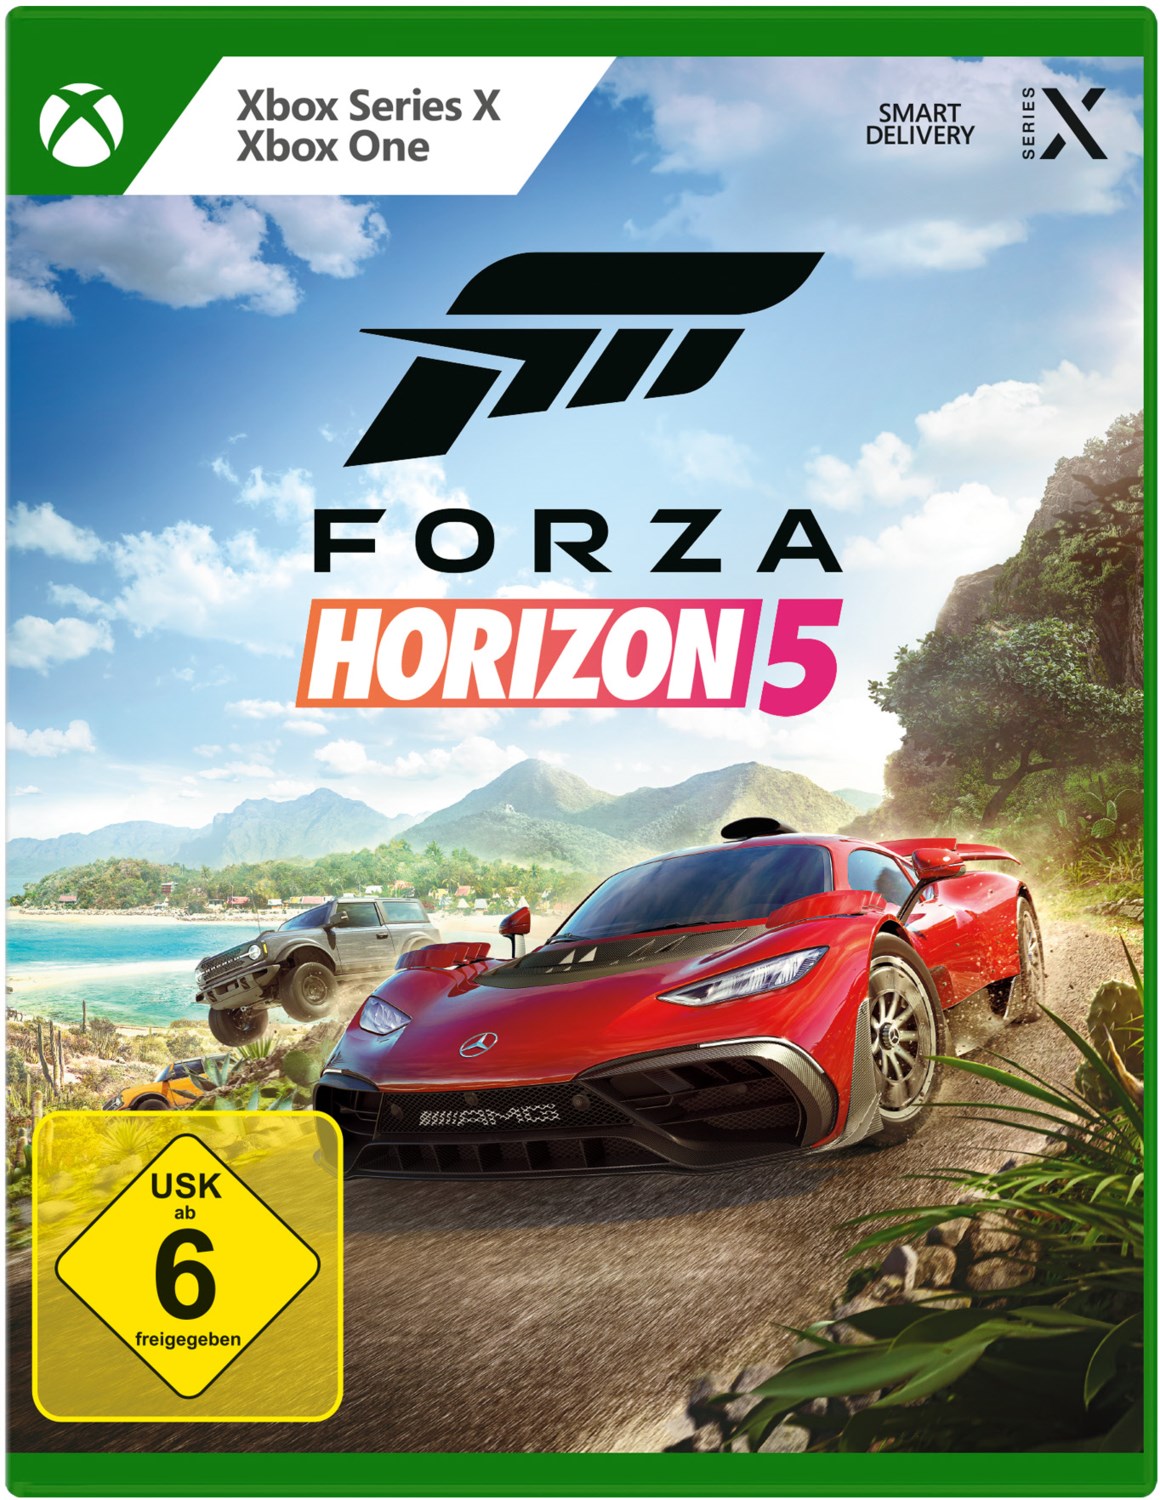 Microsoft Xbox One Xbone X Xbsx Series X Spiel Forza Horizon 5 Neu New 55